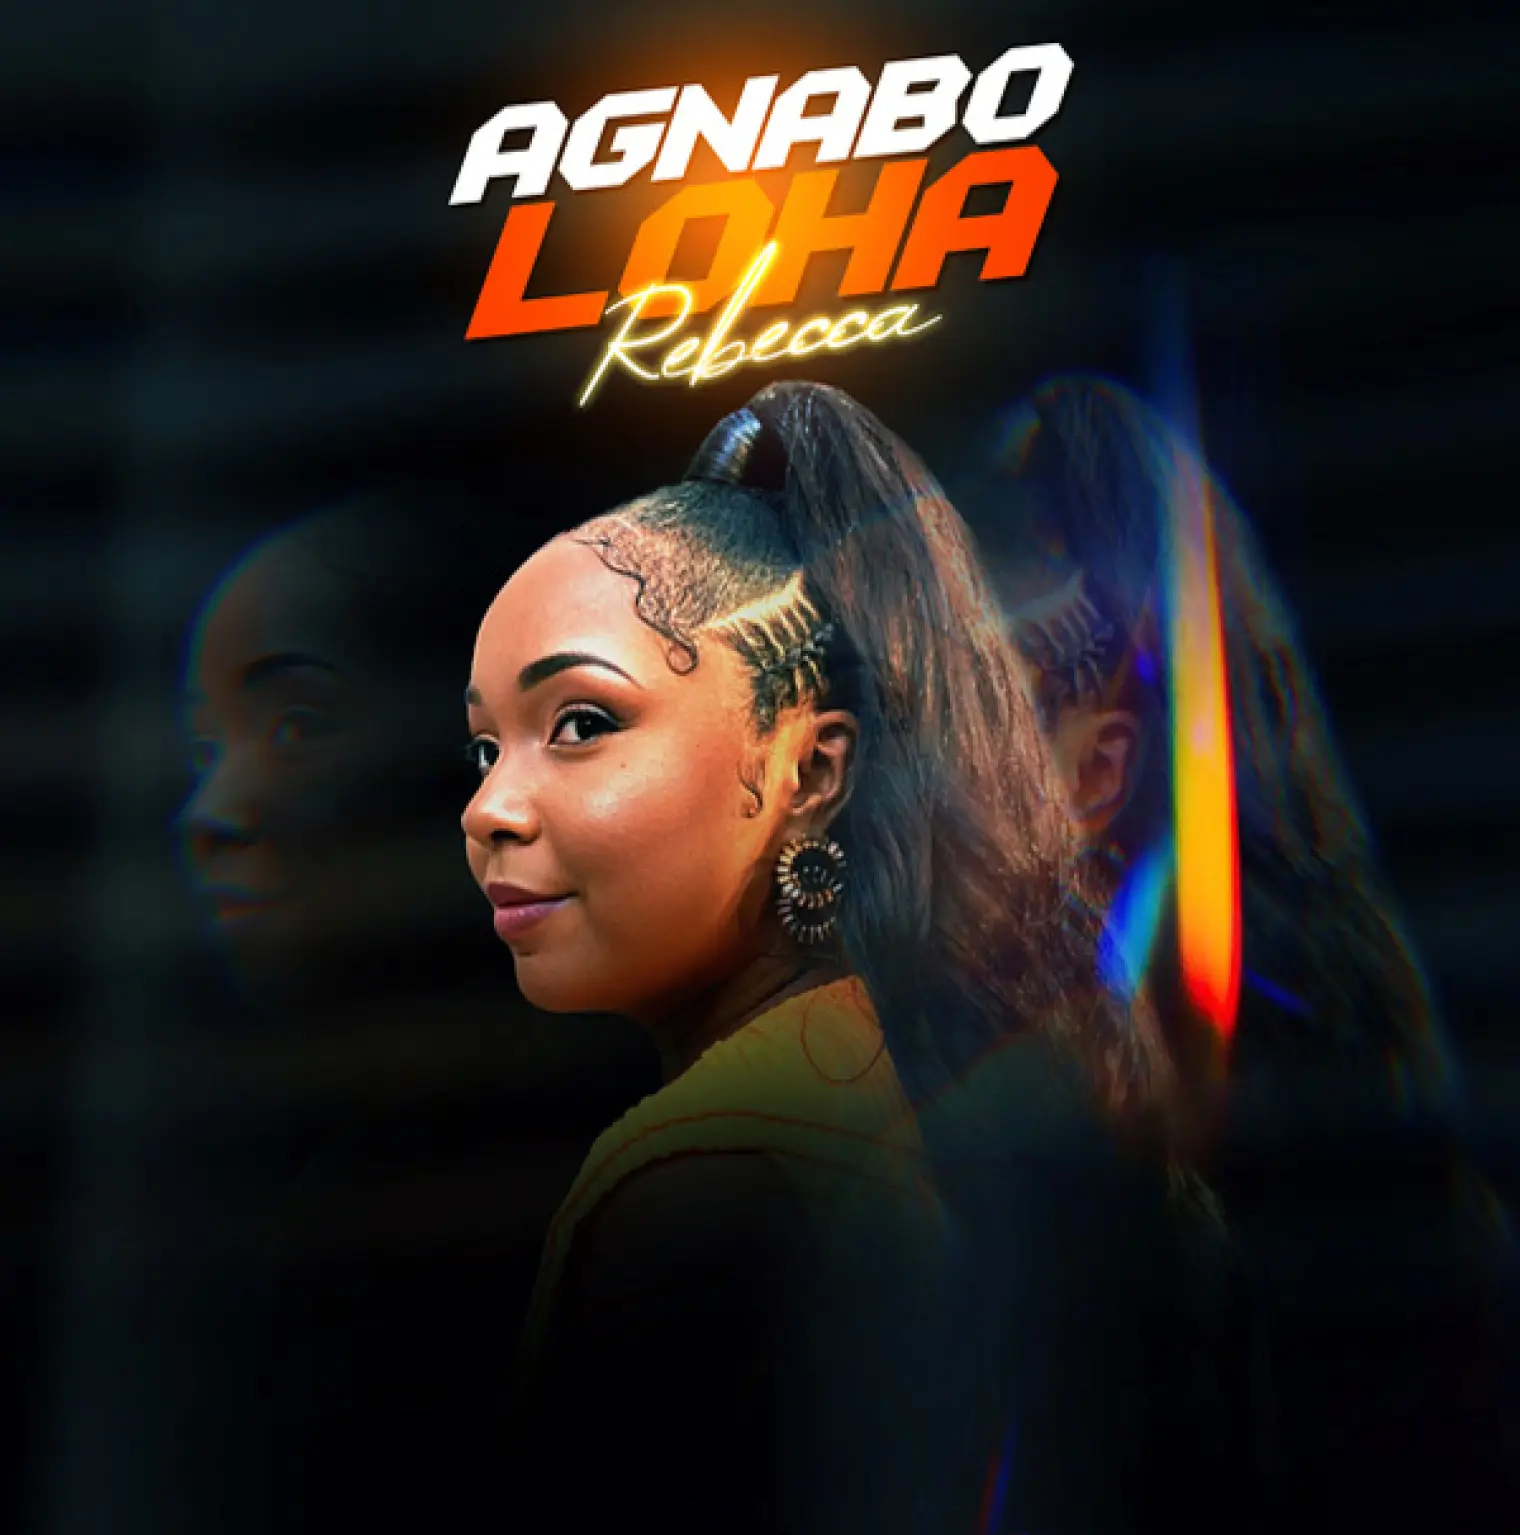 Agnabo Loha -  Rebecca 